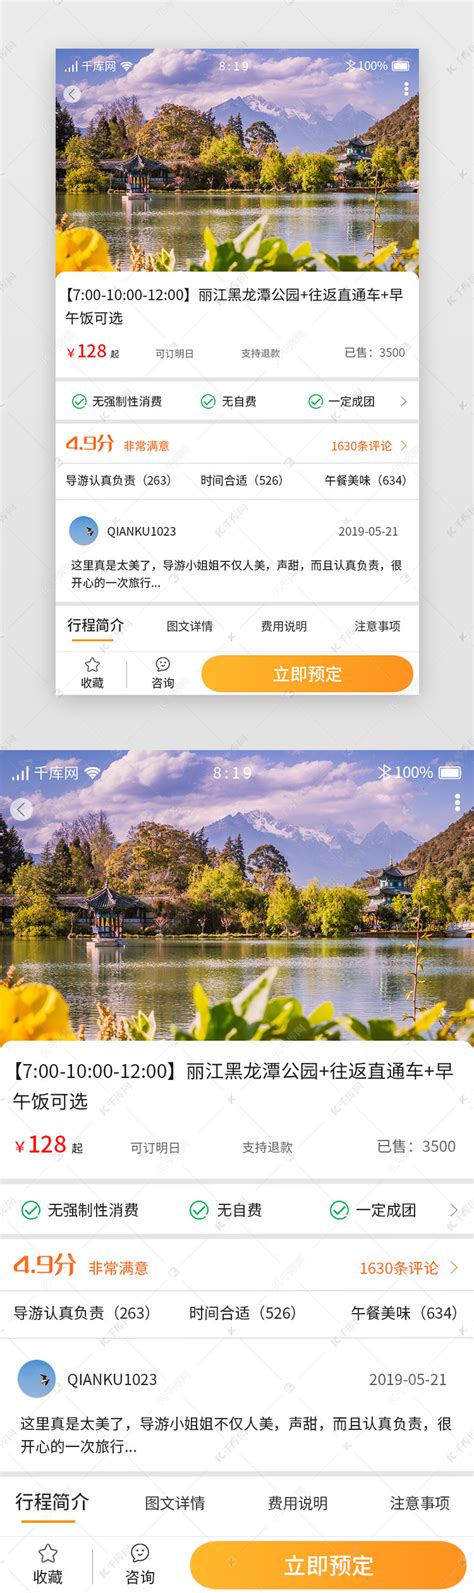 旅游团购APP路线预订详情ui界面设计素材-千库网